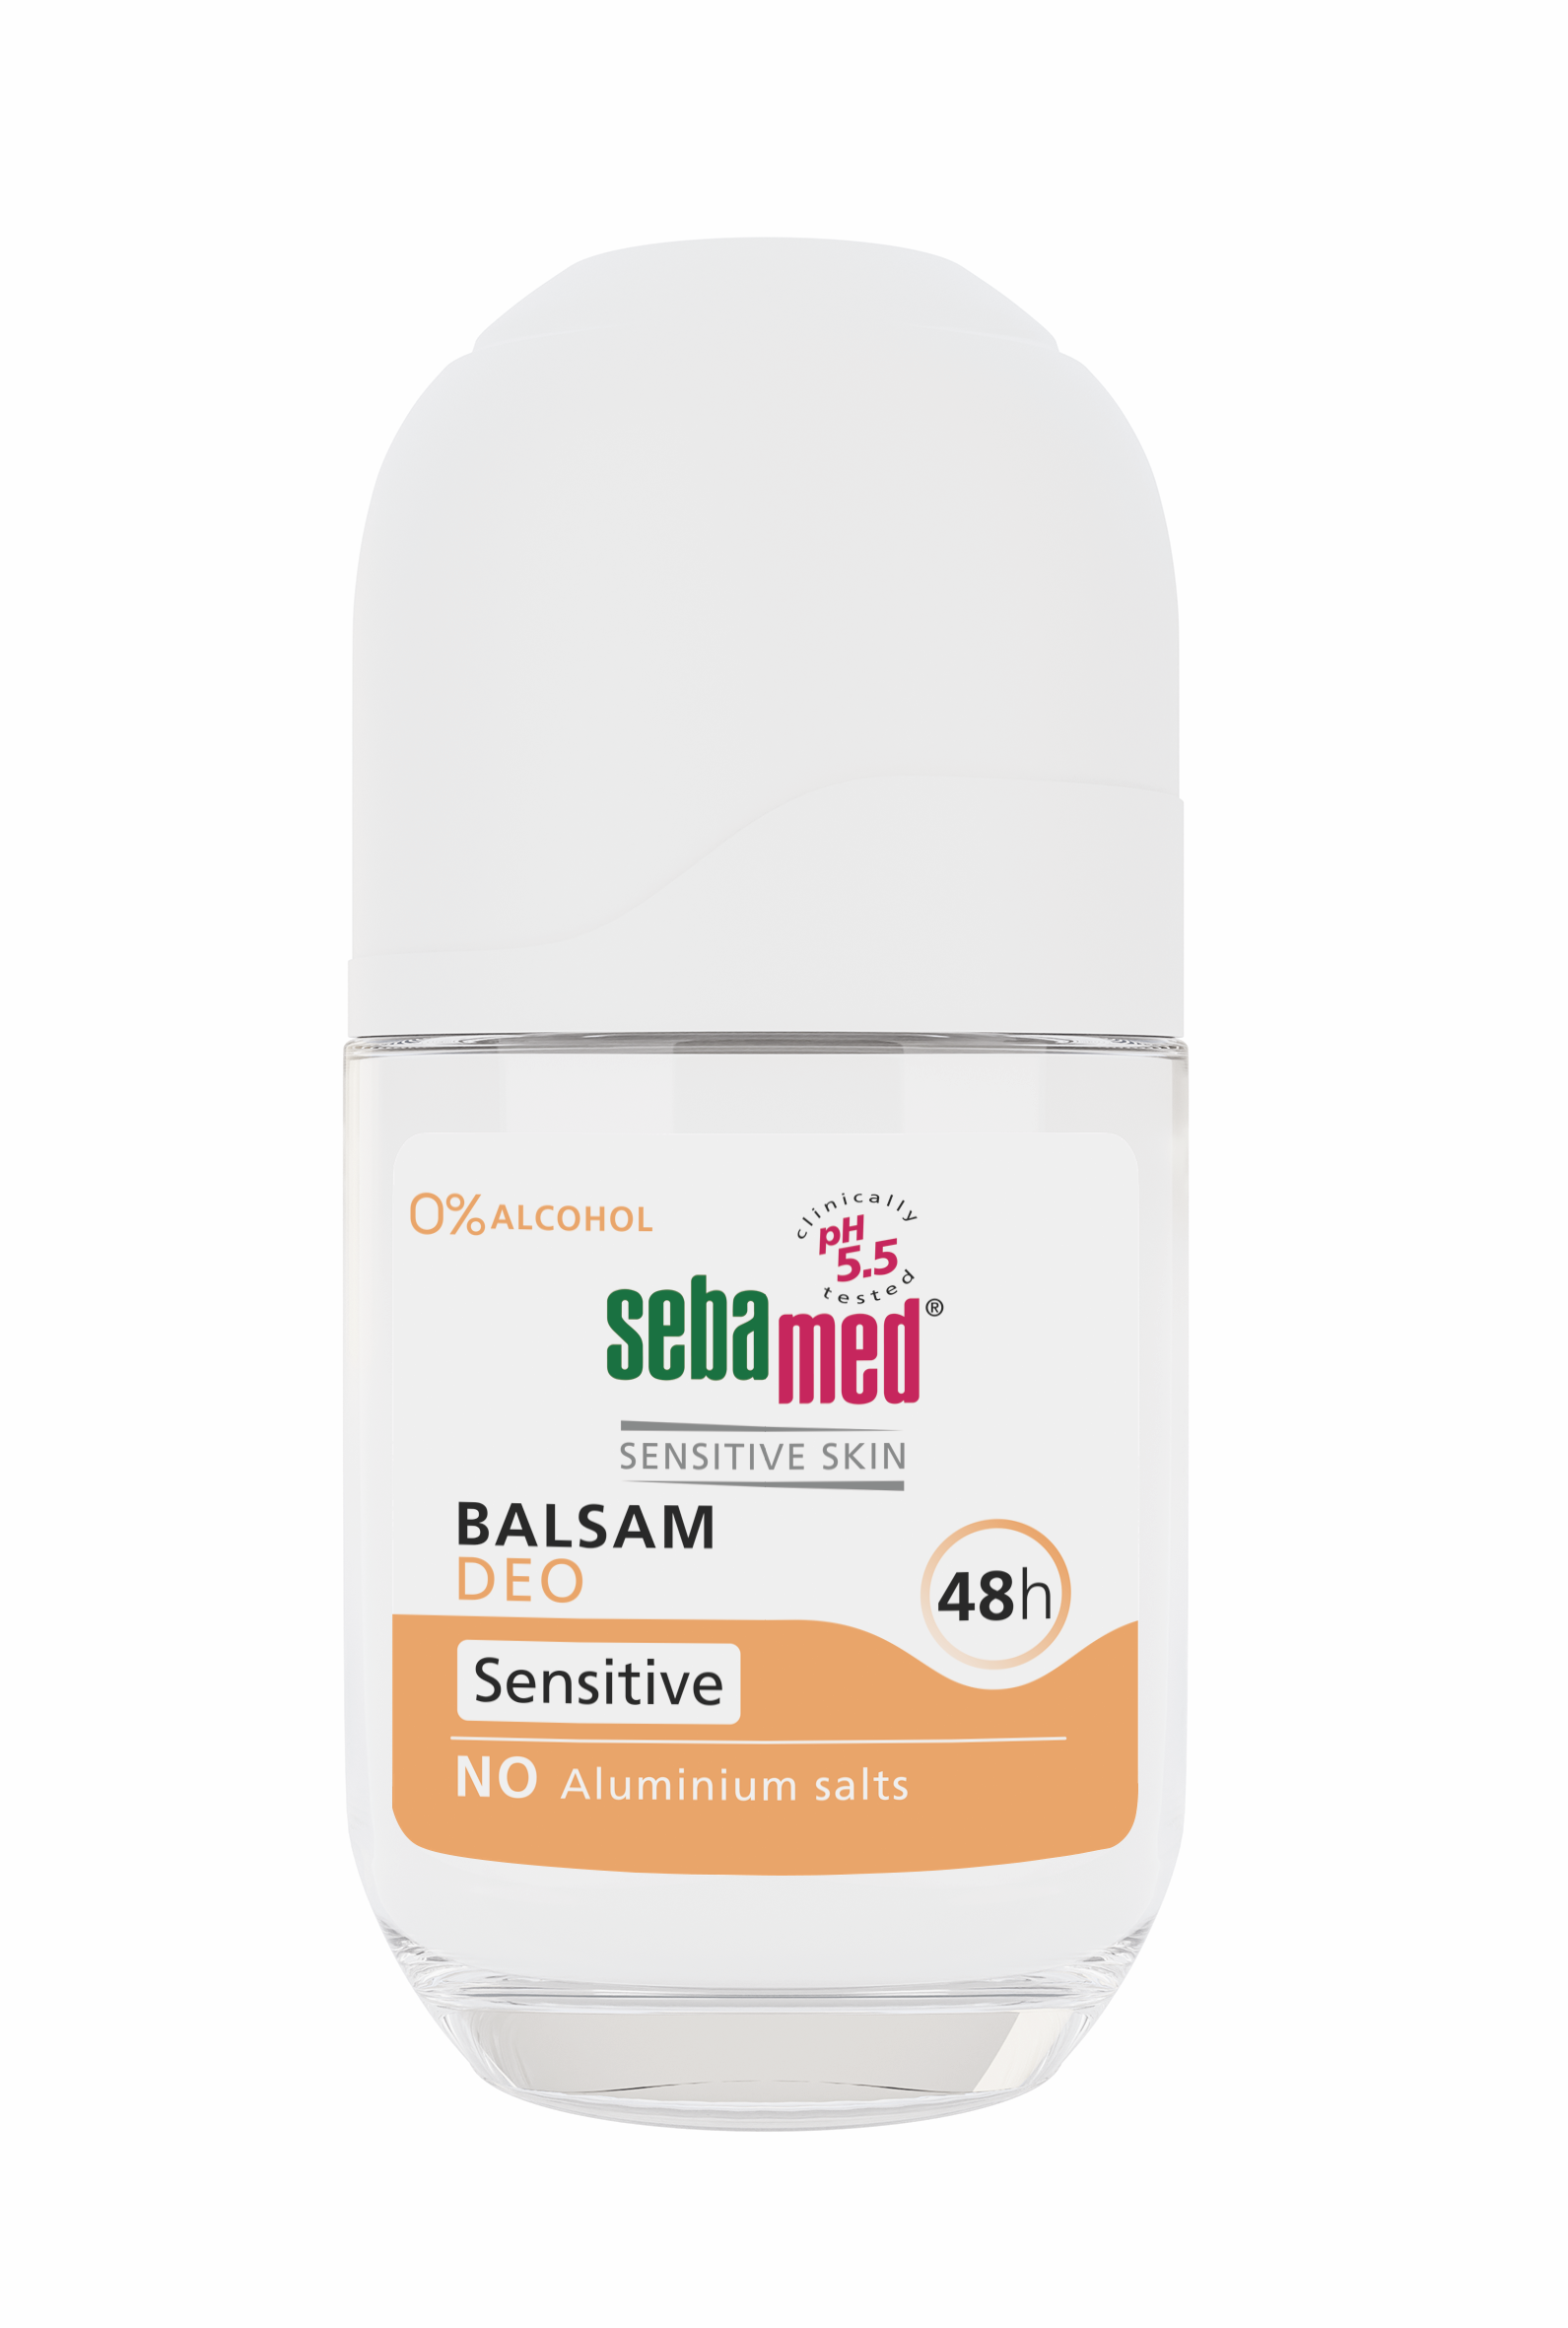 Sebamed, Deodorant balsam roll-on Sensitive, 50 ml Balsam imagine teramed.ro